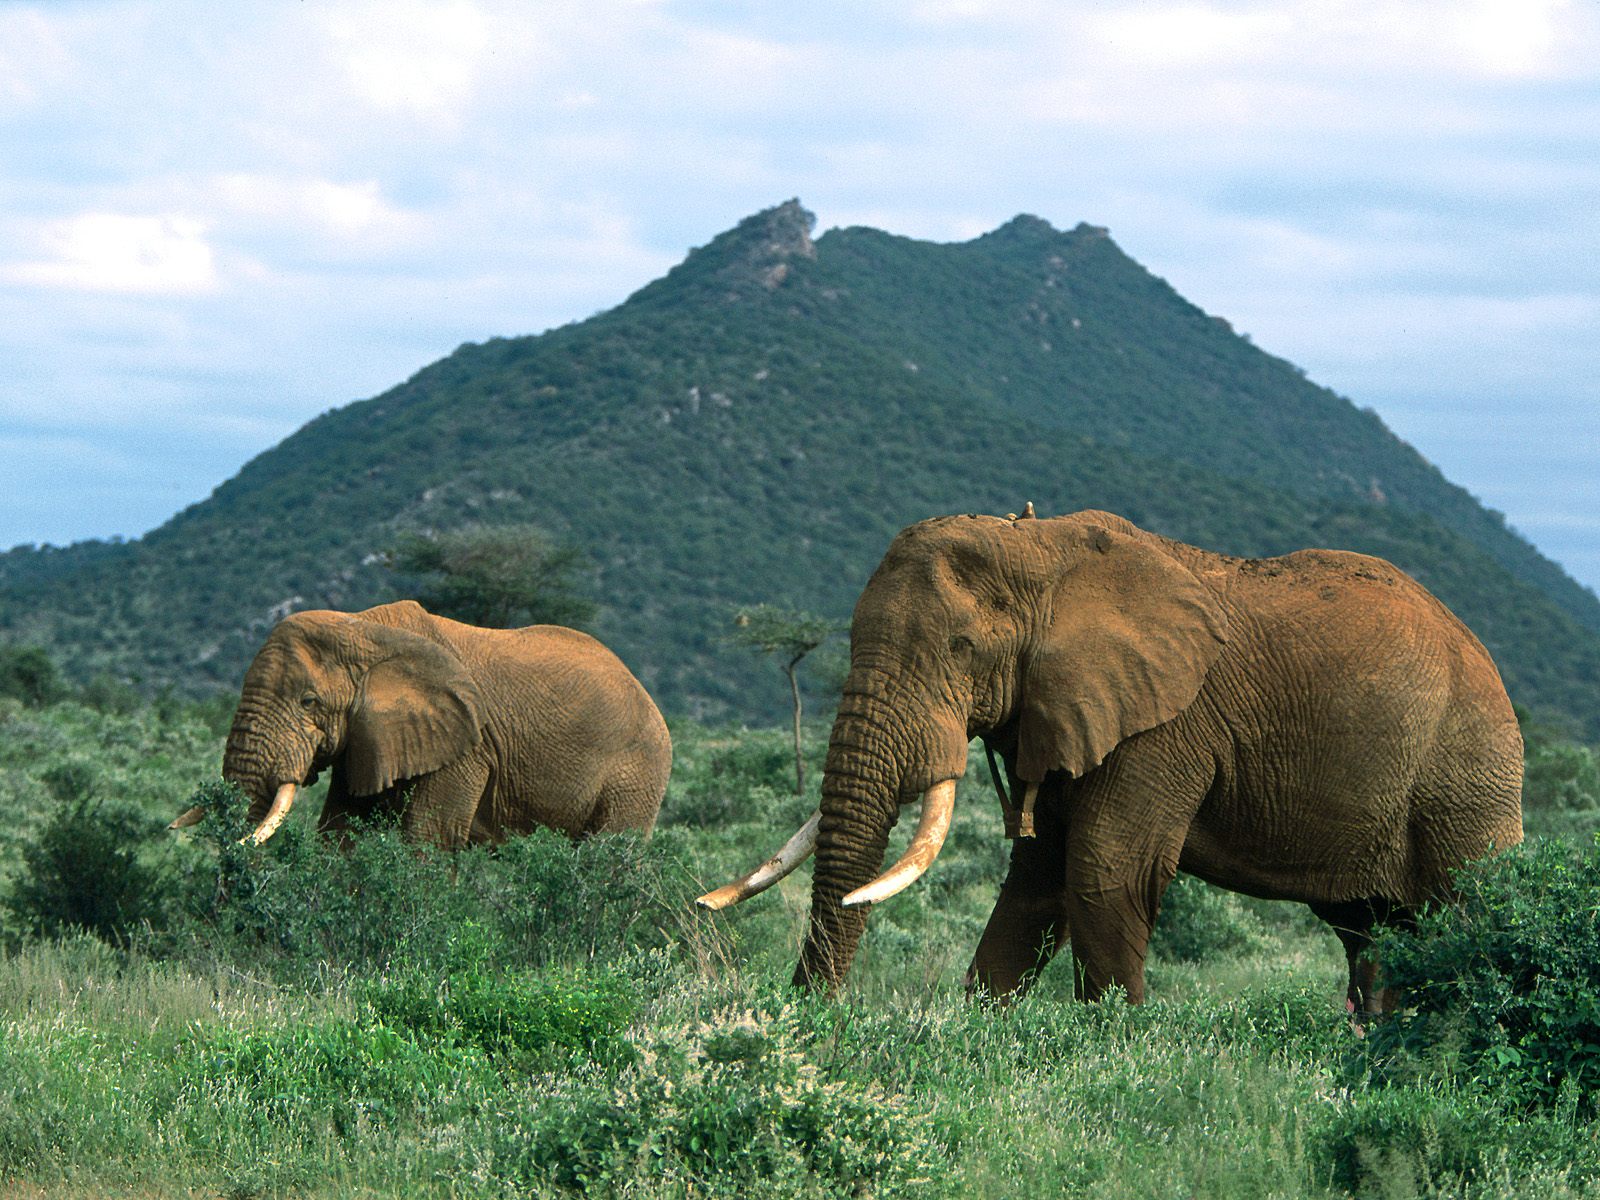 Скачать обои бесплатно Африканский Слон, Слоны, Животные картинка на рабочий стол ПК